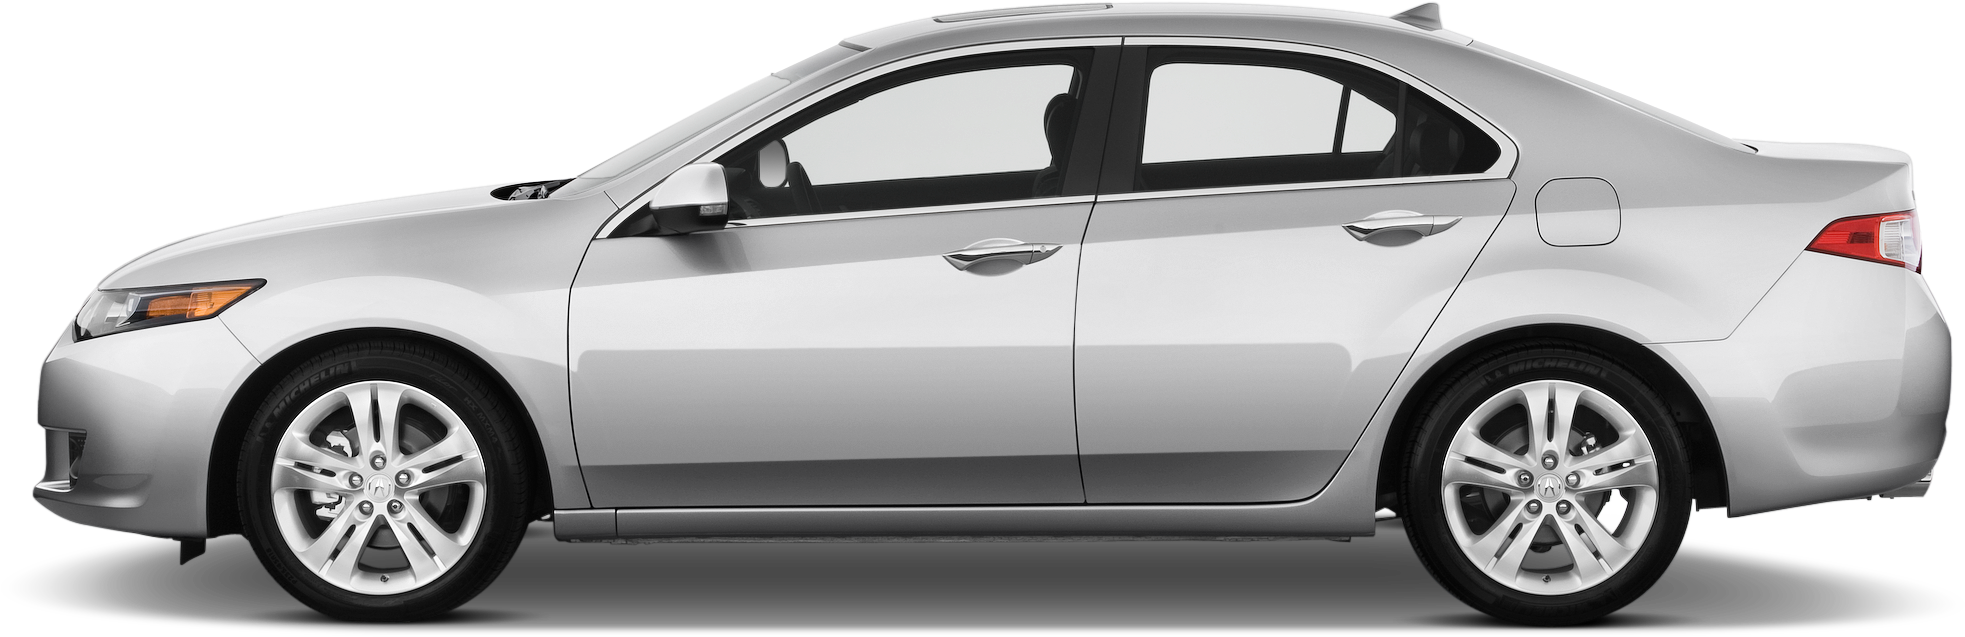 Volkswagen Passat 4 Door Clipart (2048x1360), Png Download